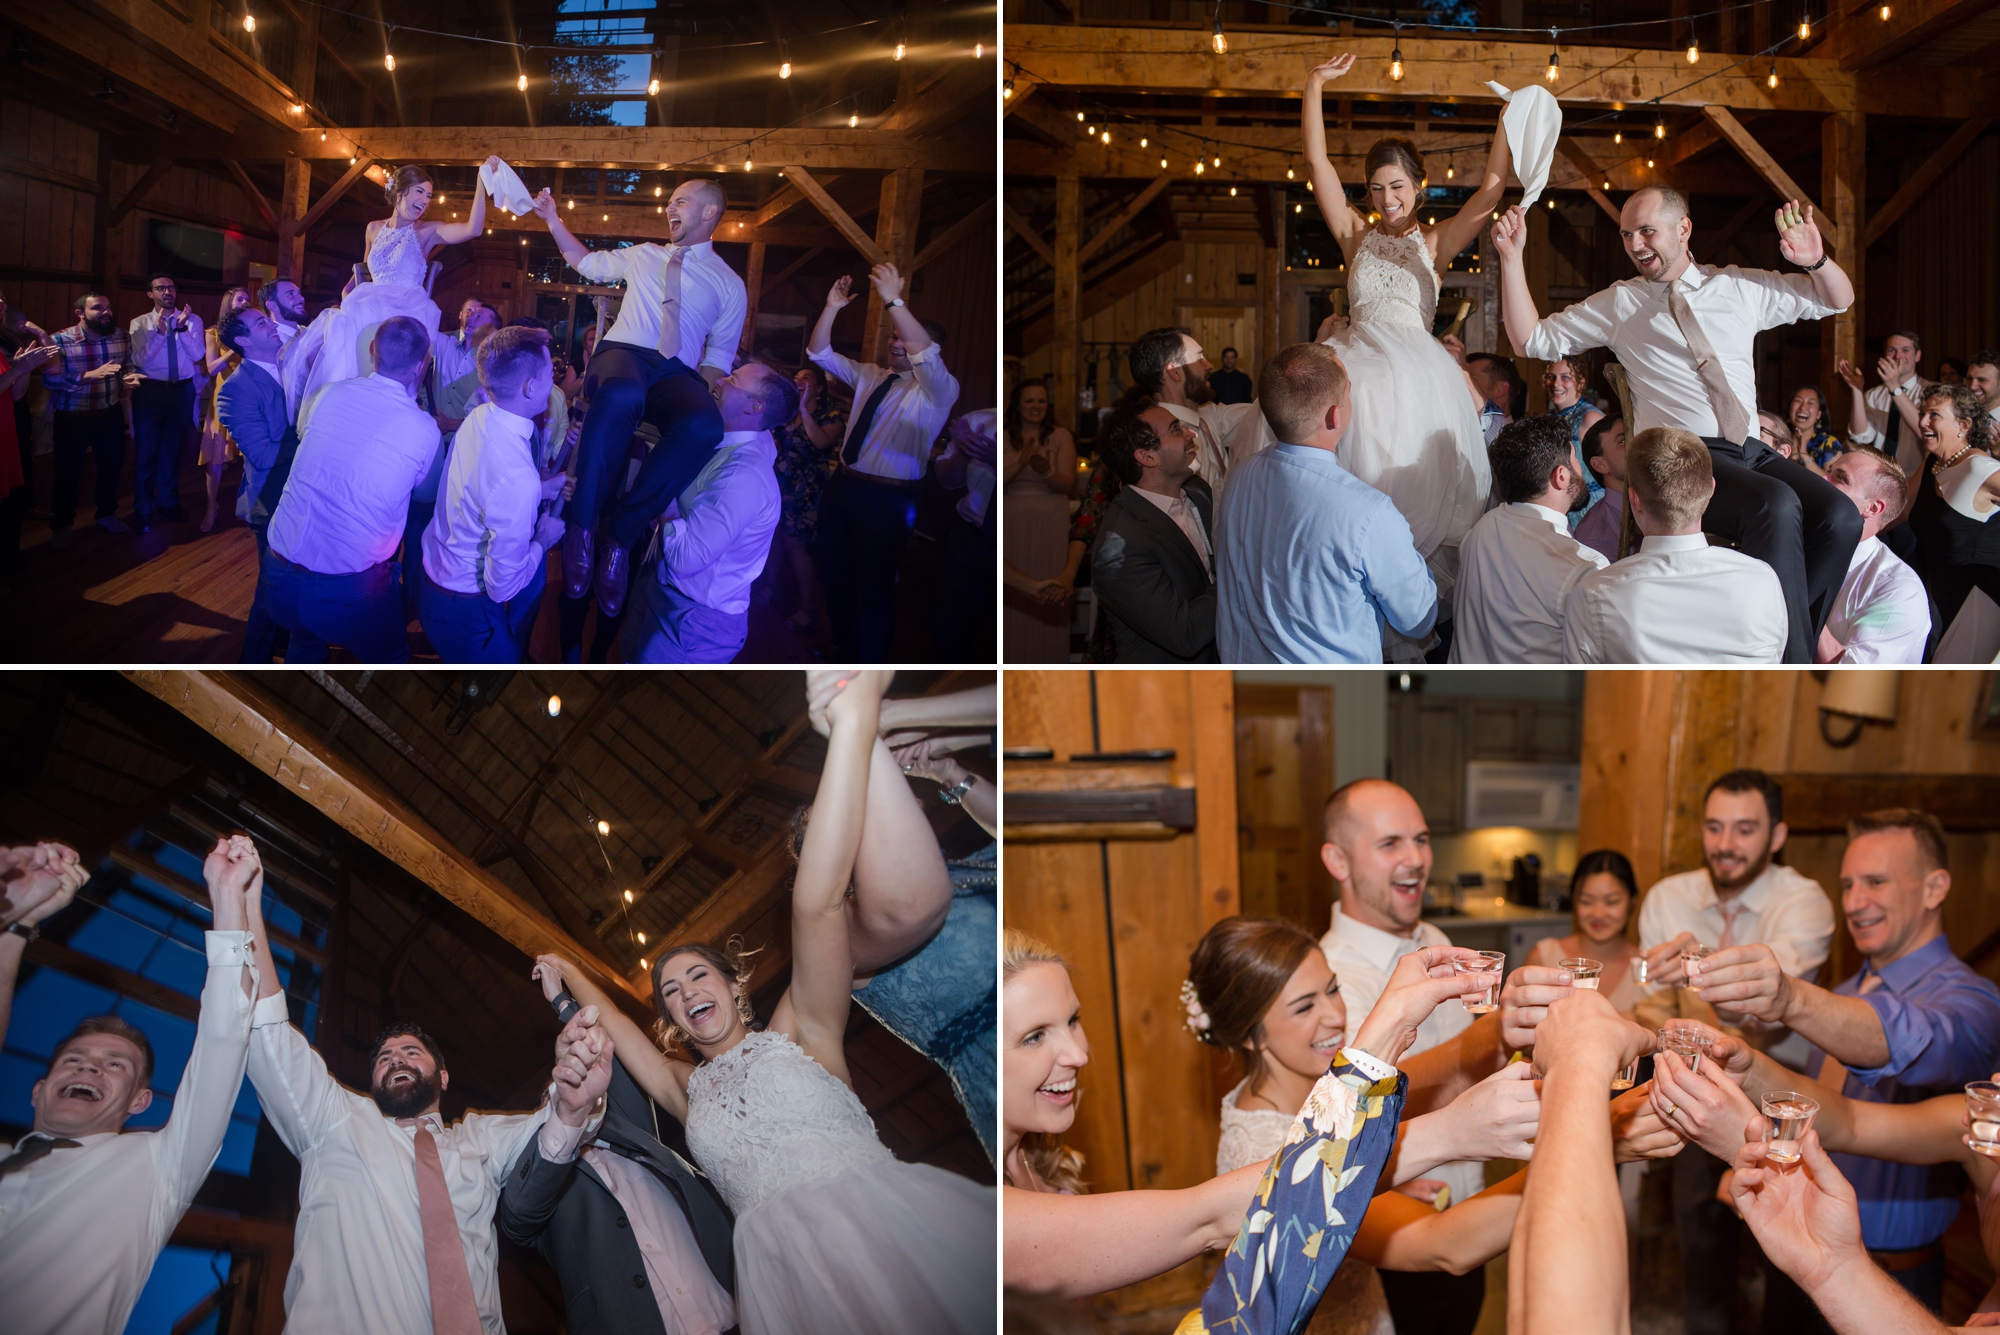 Guests having fun at Jewish wedding reception